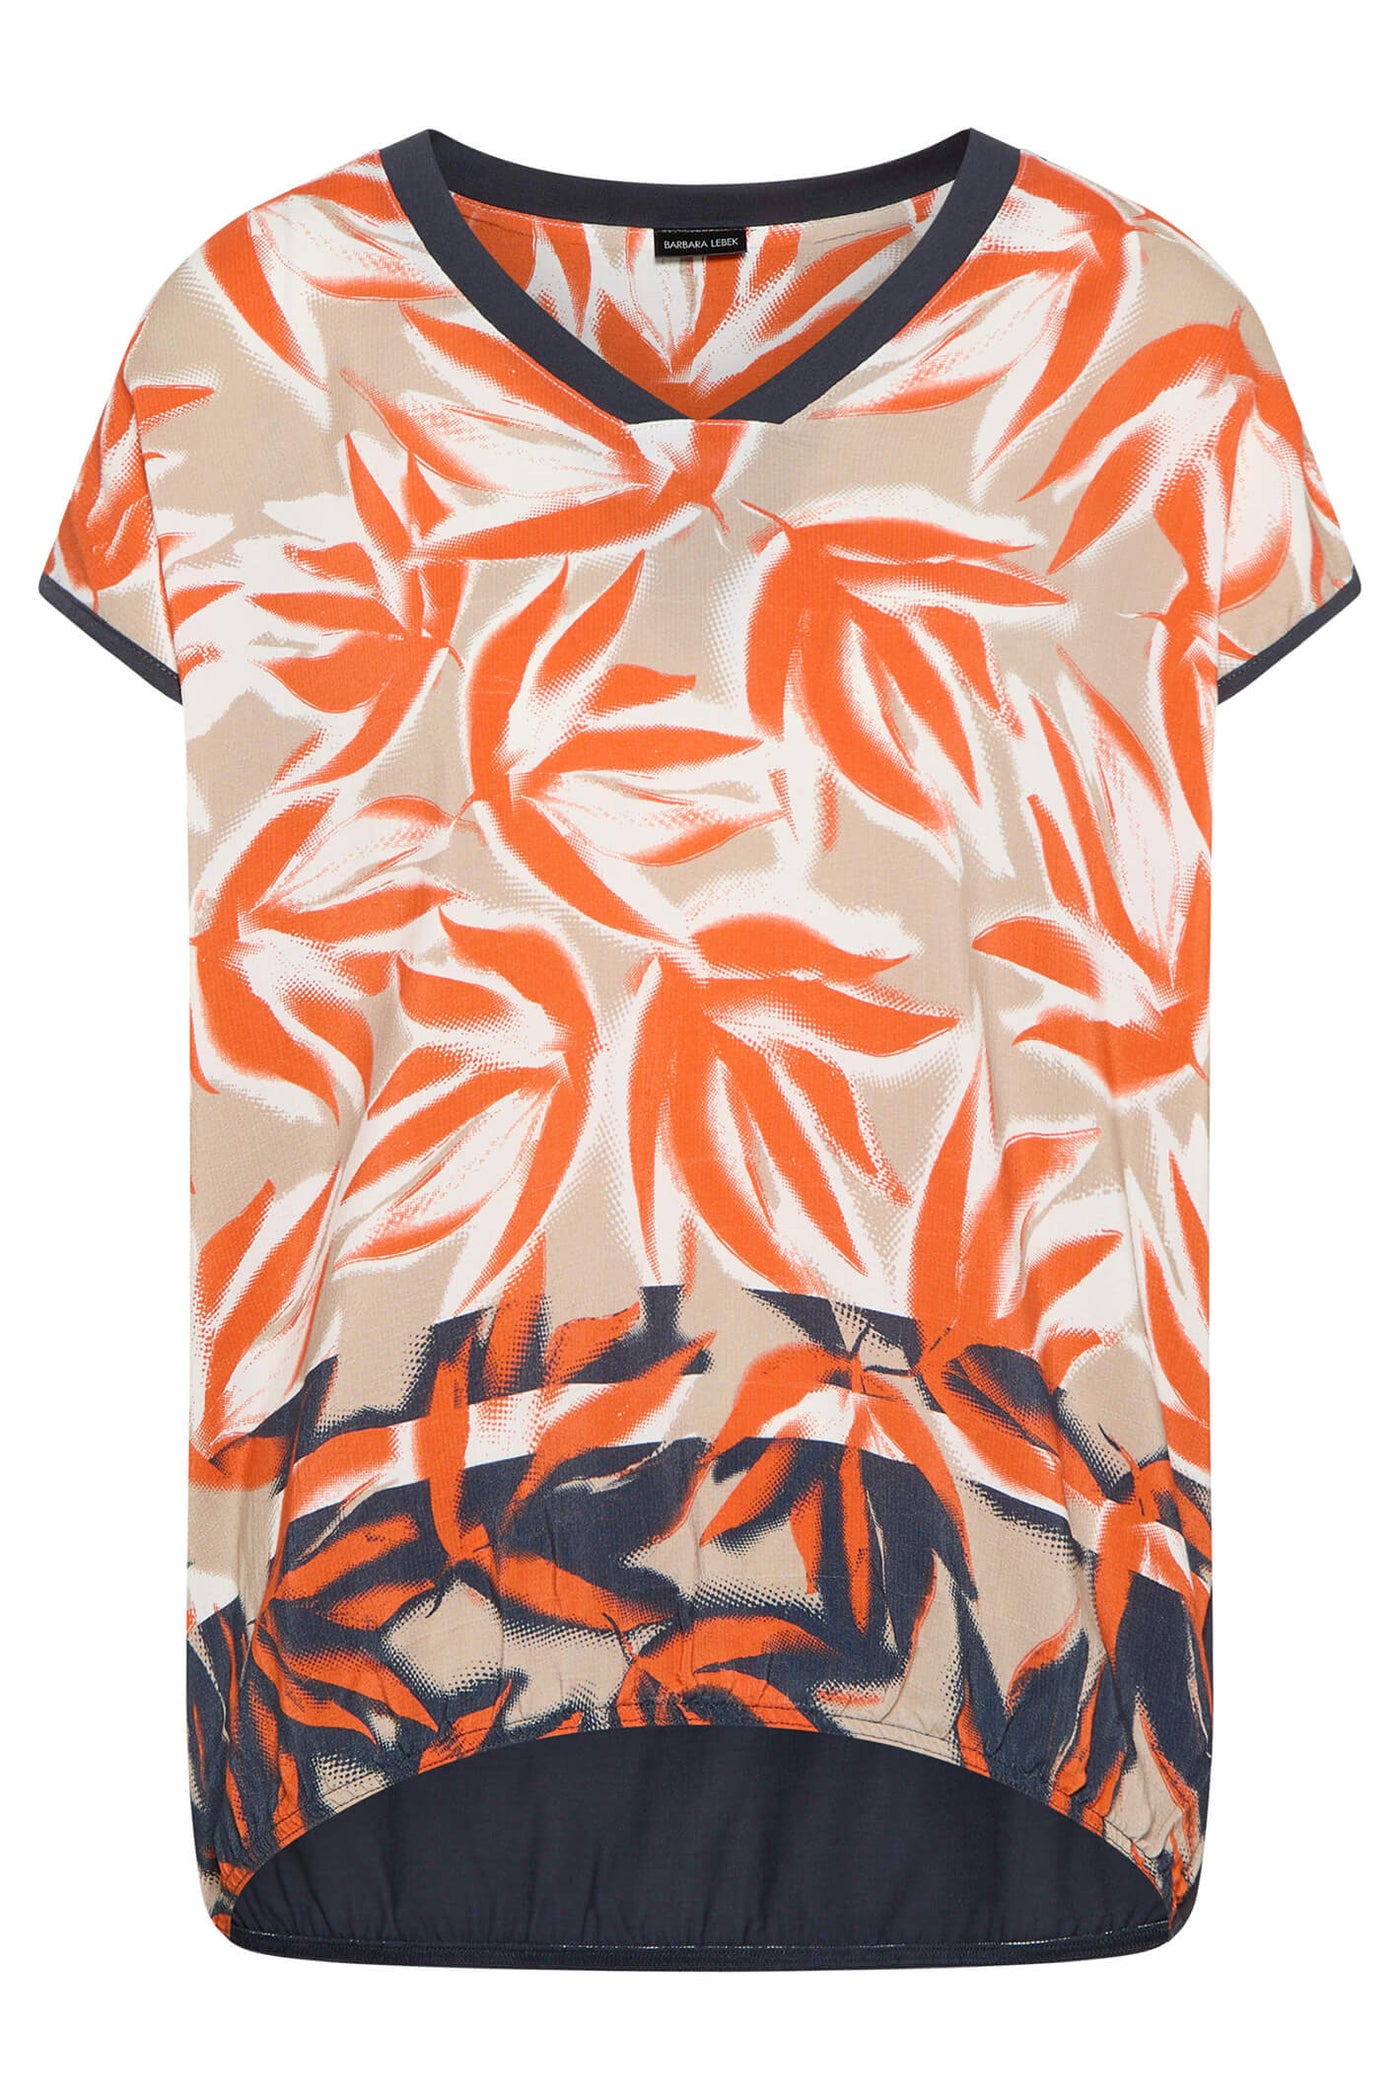 Barbara Lebek 77590032 Orange Leaf Print V-Neck Short Sleeve Top - Rouge Boutique